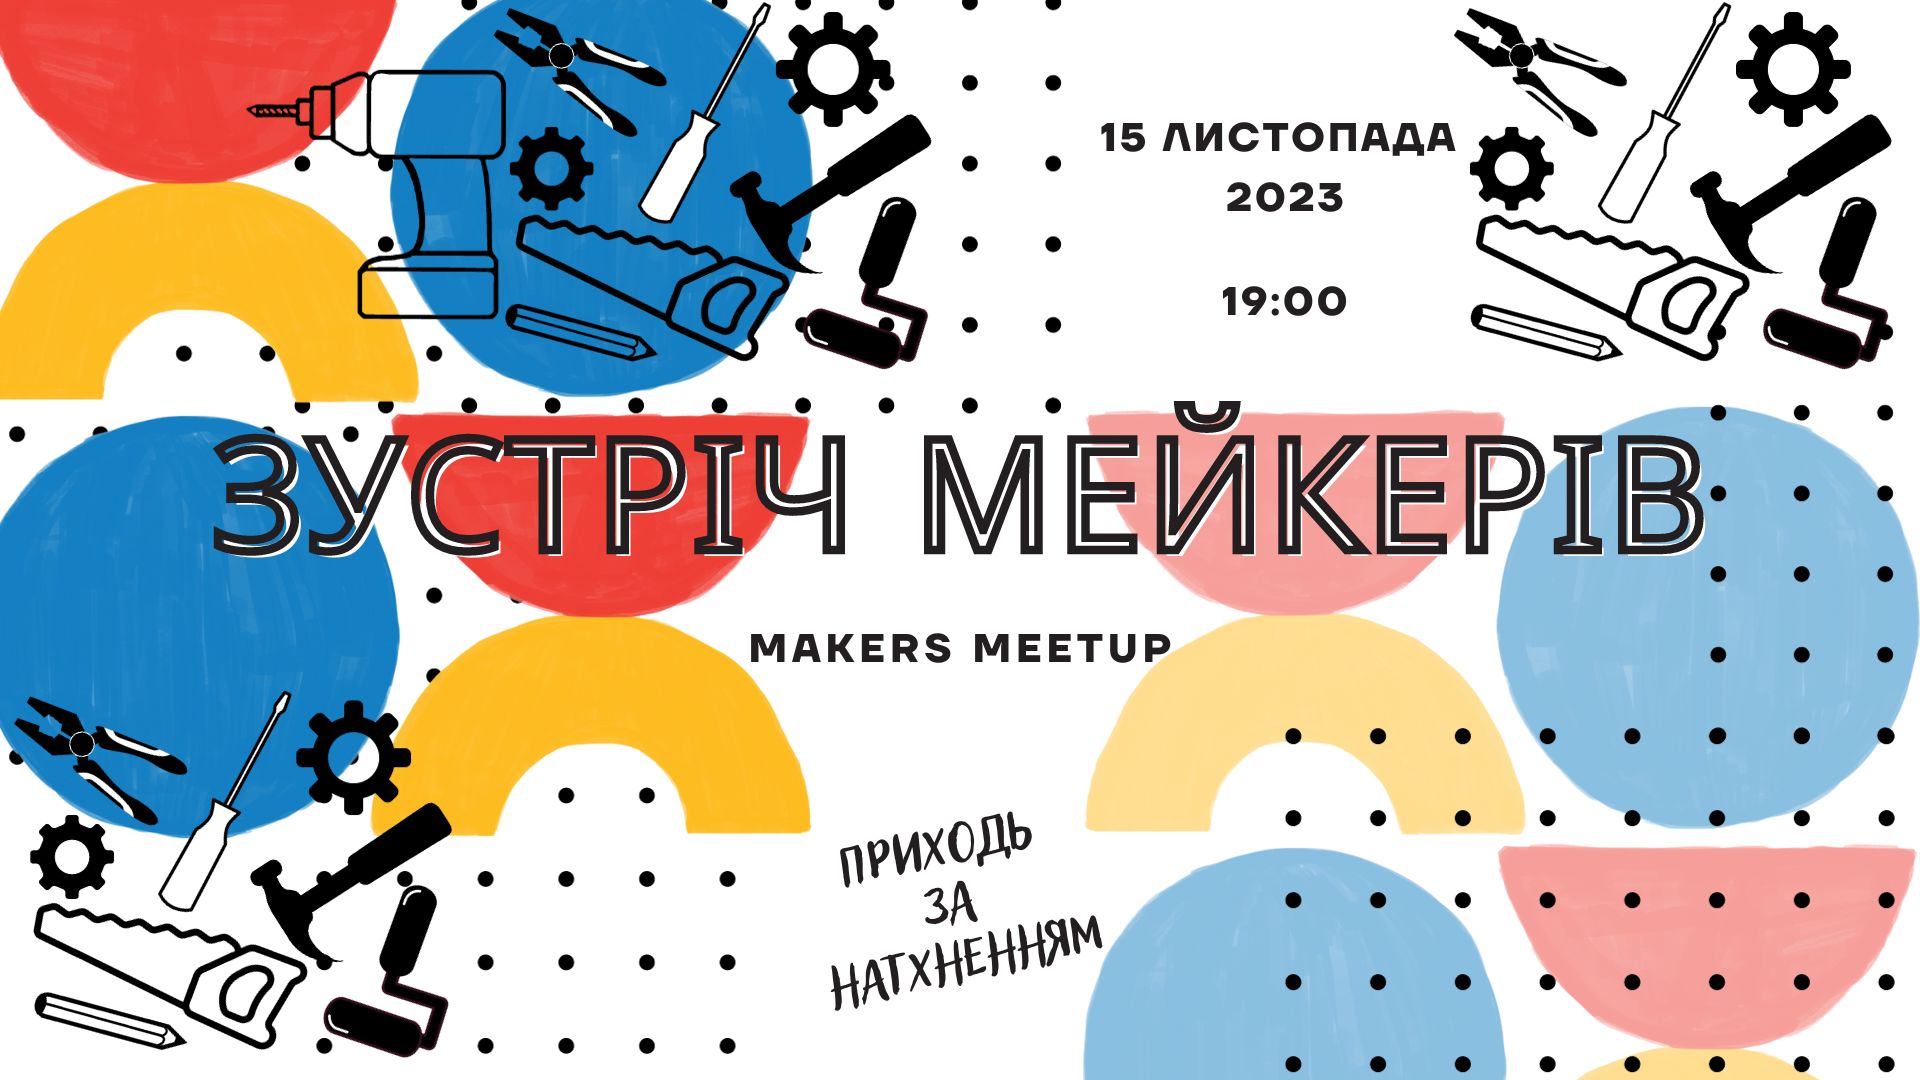 Наступна онлайн-зустріч мейкерів України 15 листопада!